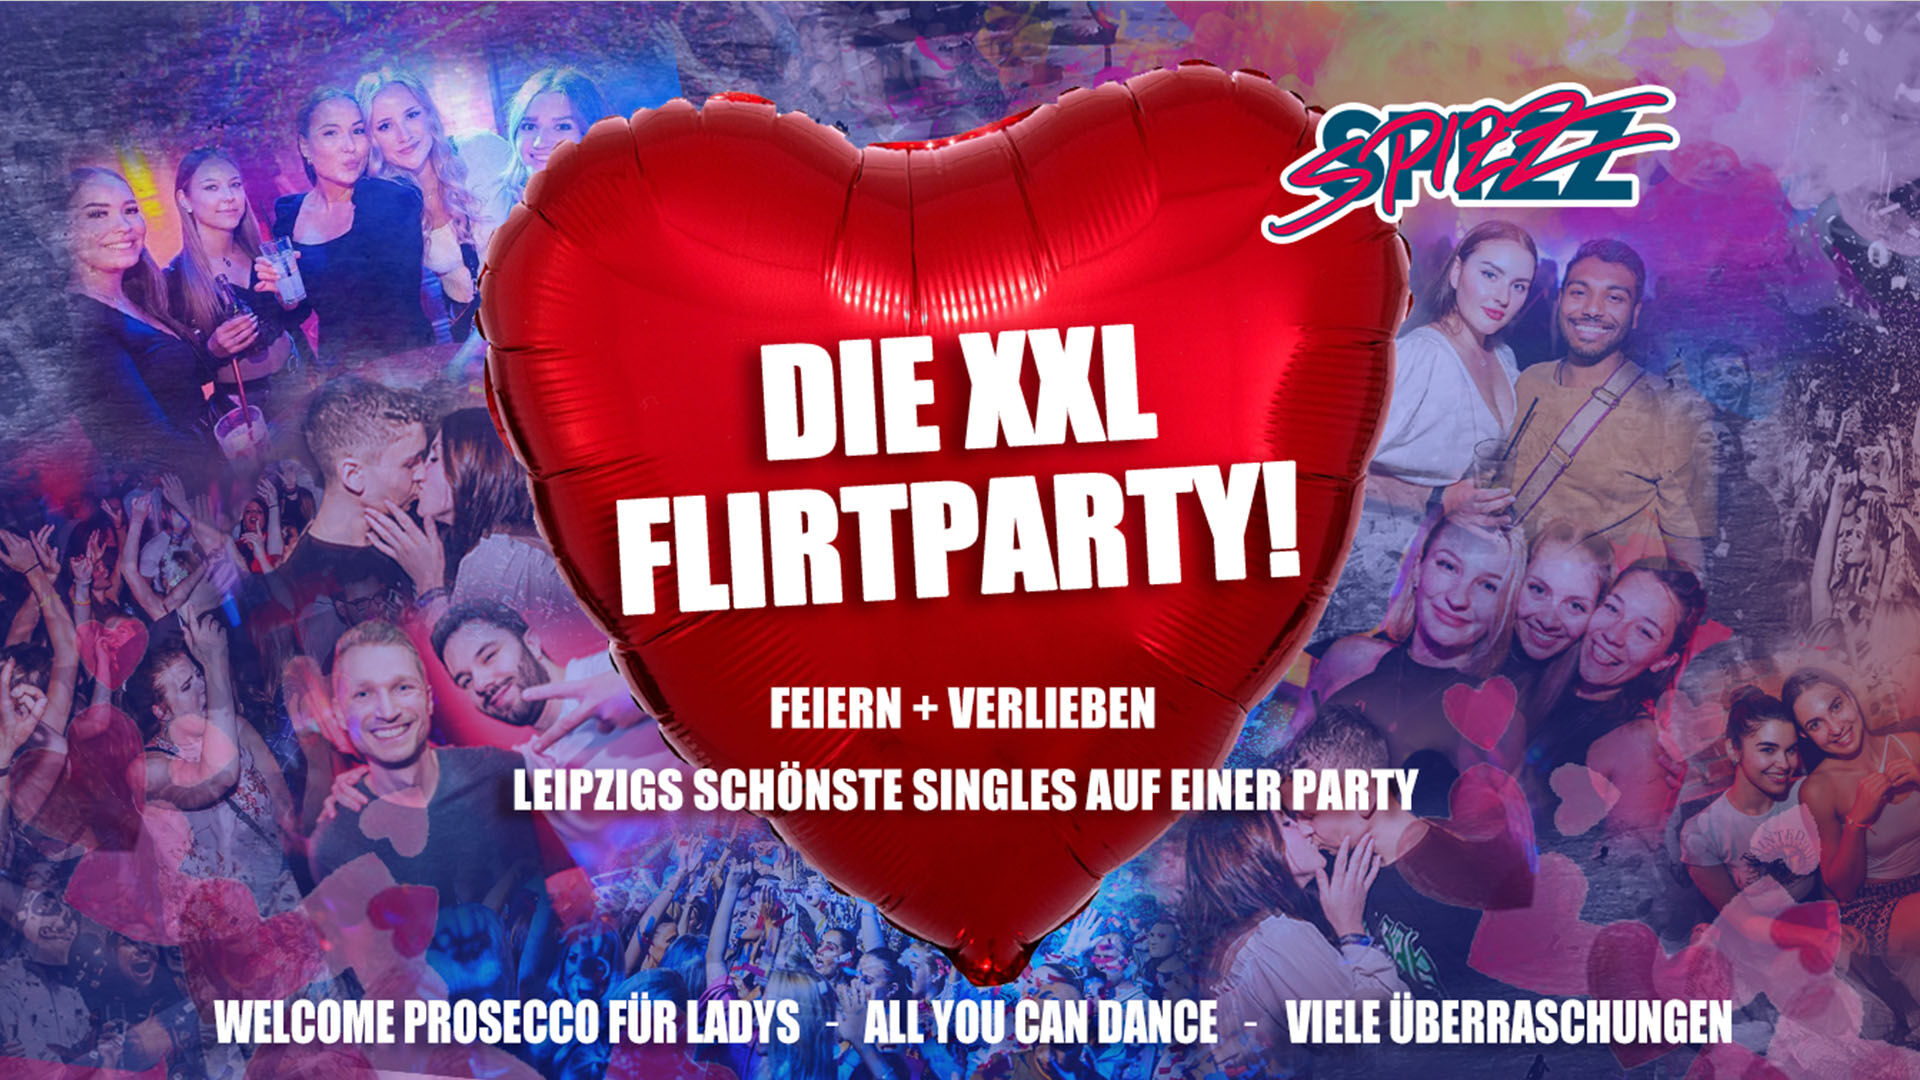 Die XXL Flirtparty - Singles Leipzig im SPIZZ Leipzig 